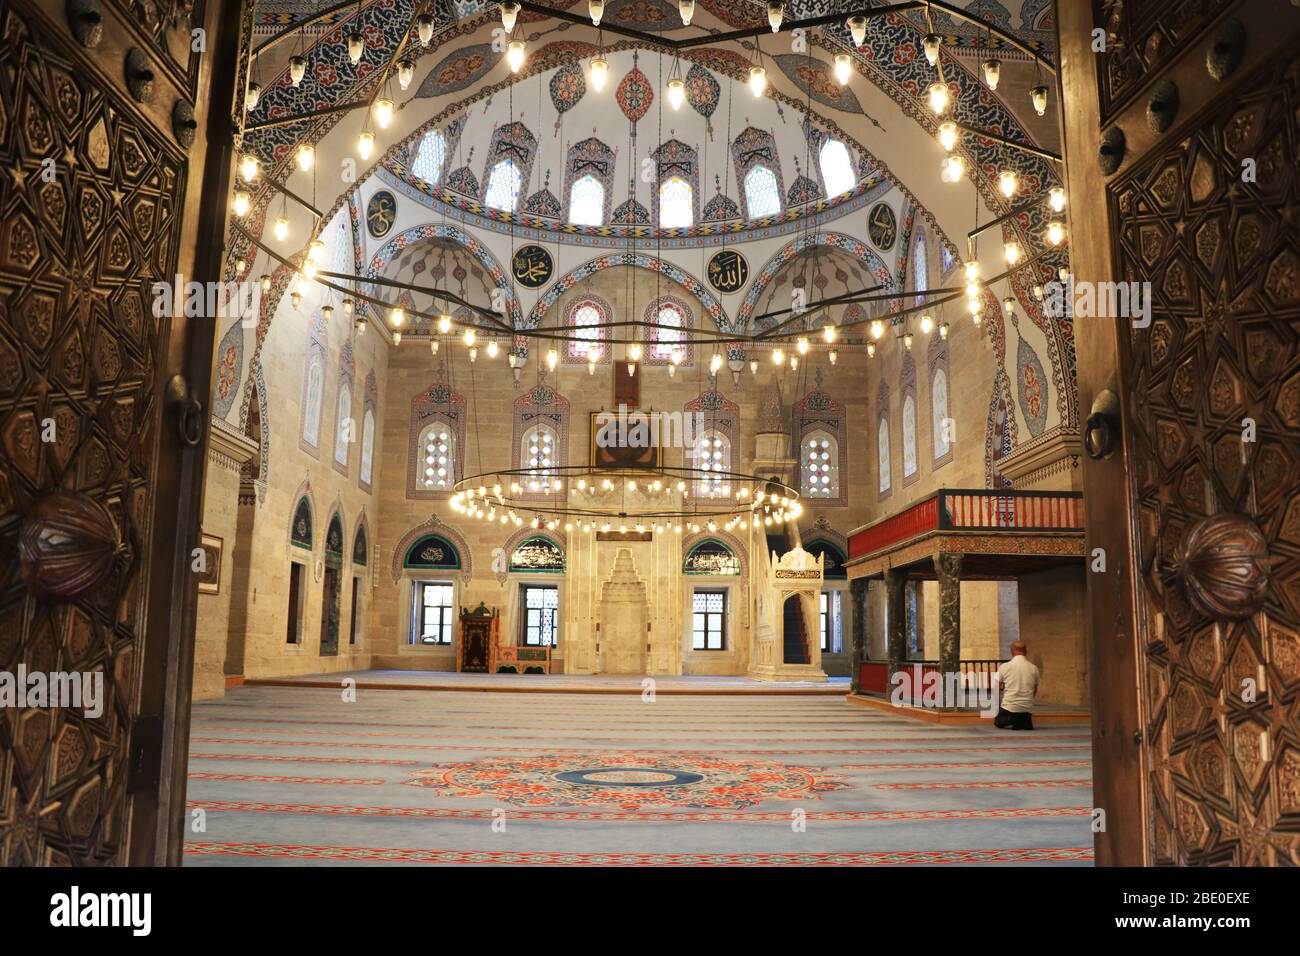 Architecture islamique, Mosquée ottomane du Sultan Bayezid II à Amasya, Turquie Banque D'Images